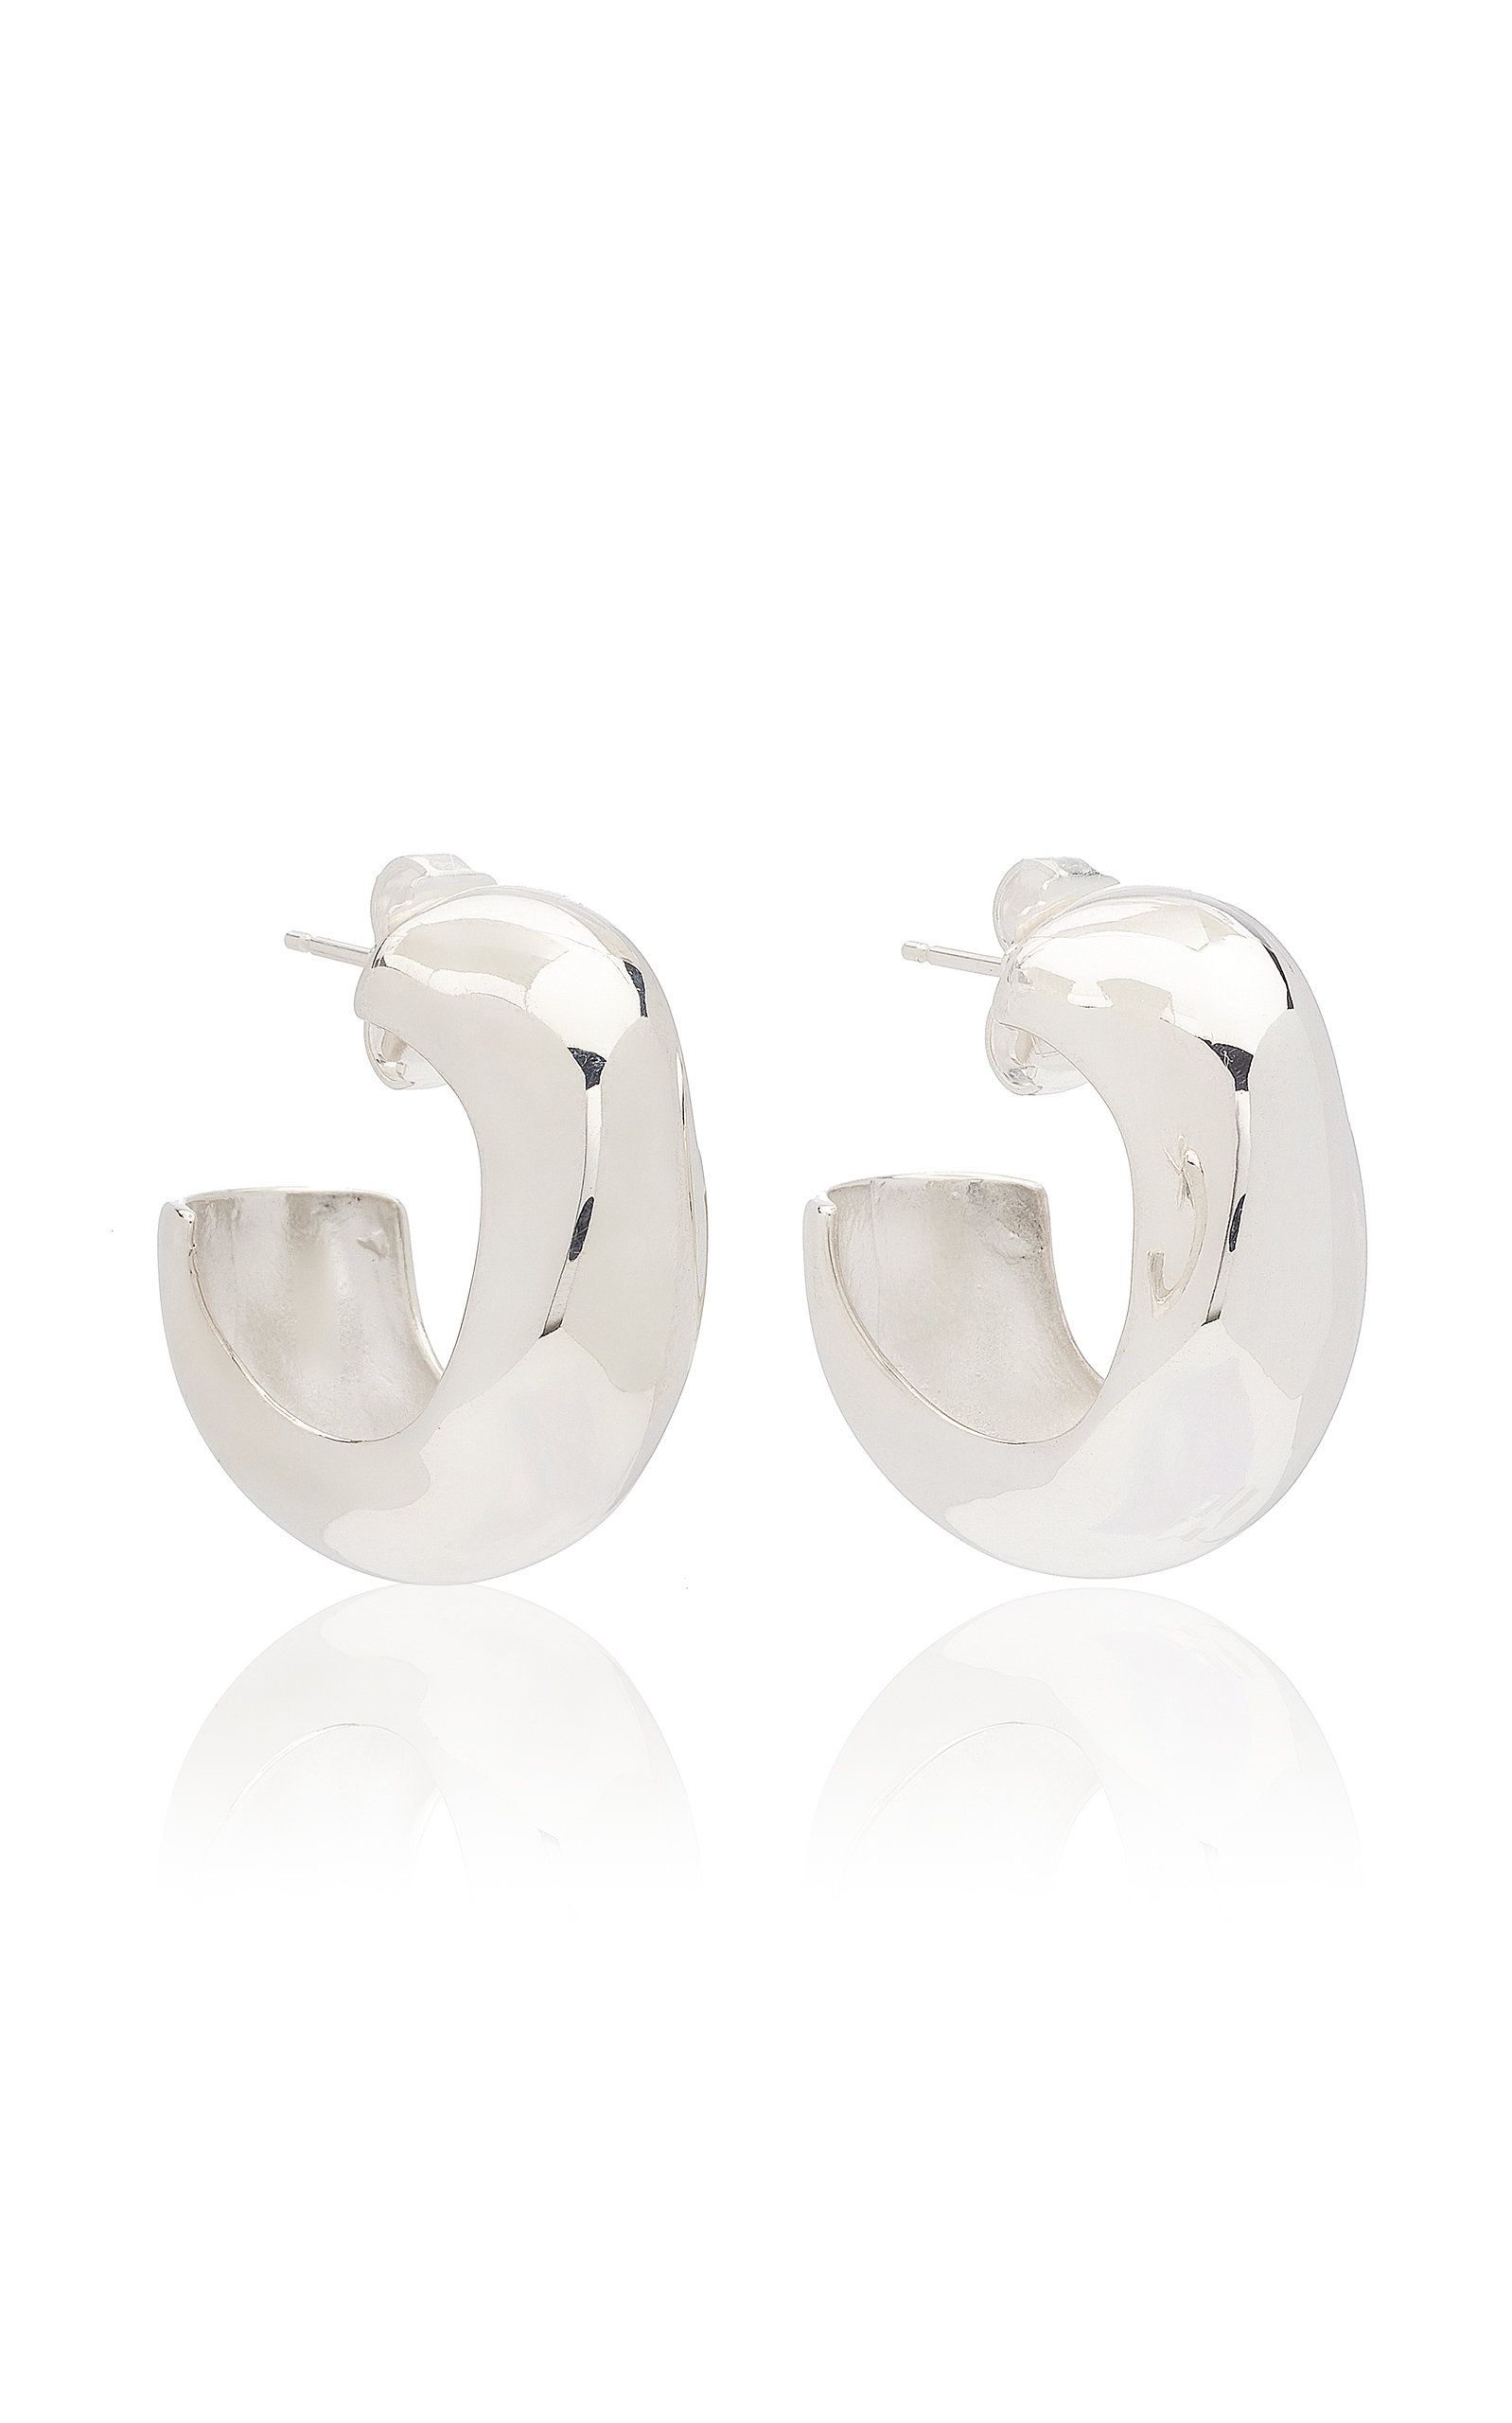 AGMES - Women's Celia Medium Sterling Silver Hoop Earrings - Silver - OS - Moda Operandi - Gifts For | Moda Operandi (Global)